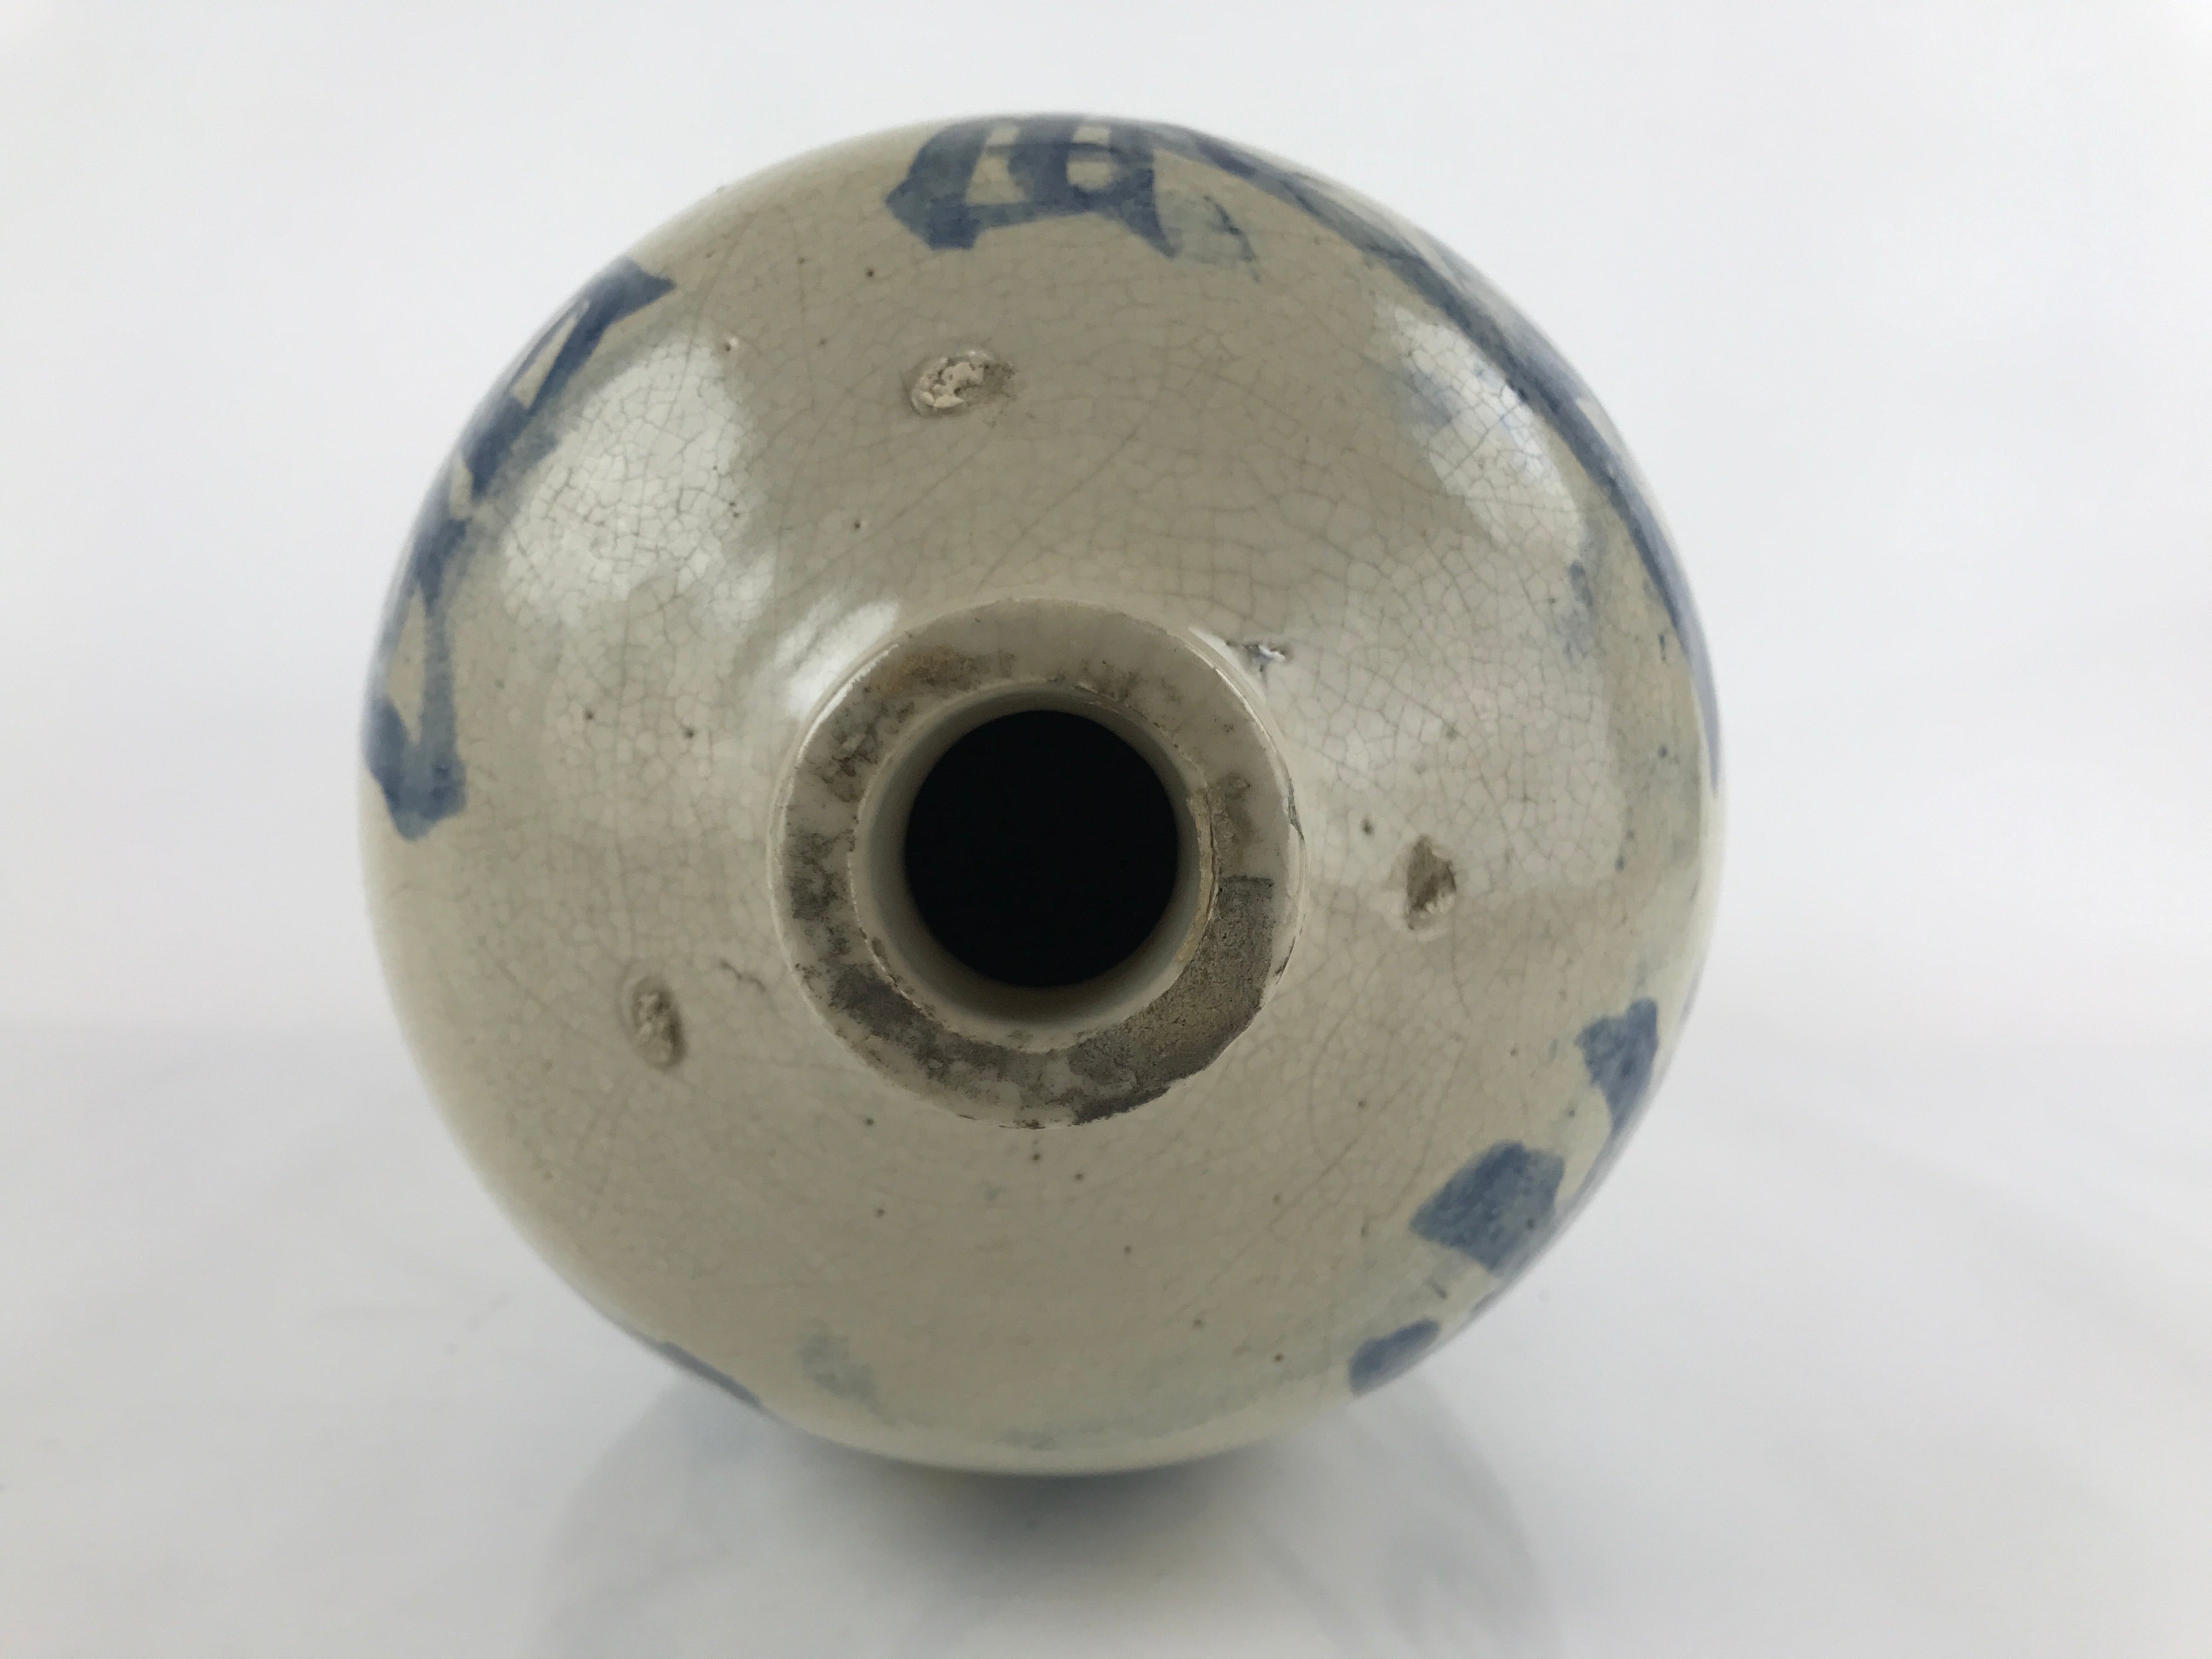 Antique C1903 Japanese Ceramic Sake Bottle Kayoi-Tokkuri Large Blue Kanji TS631